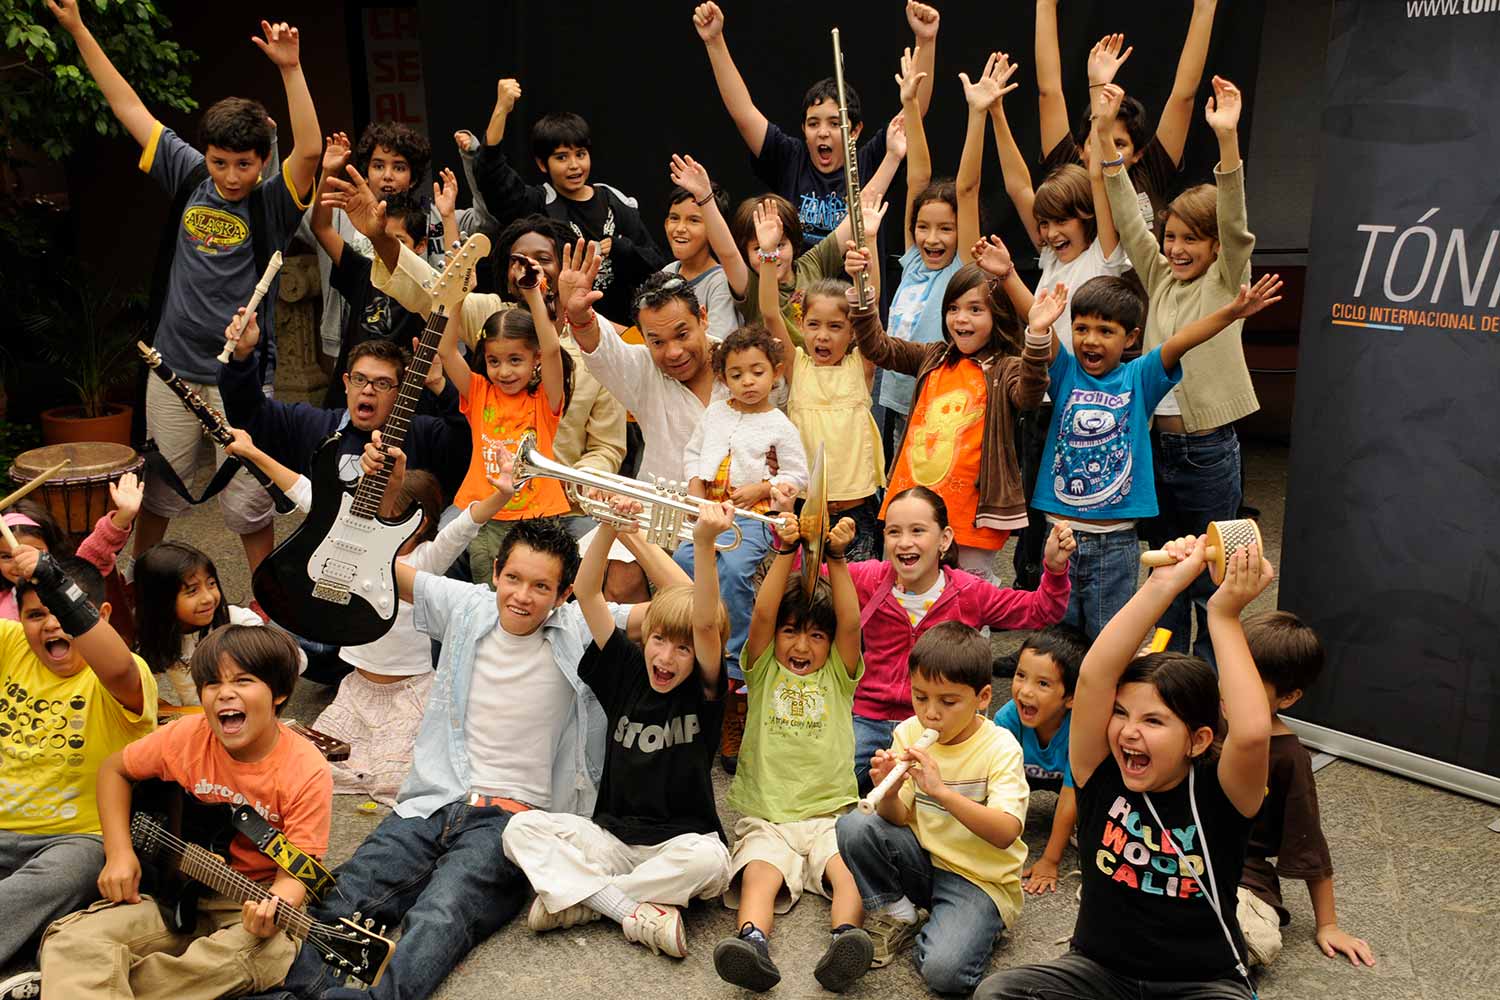 Con el programa de “Alto Rendimiento” de Fundación Tónica, SEAT México busca motivar y fomentar en los jóvenes.